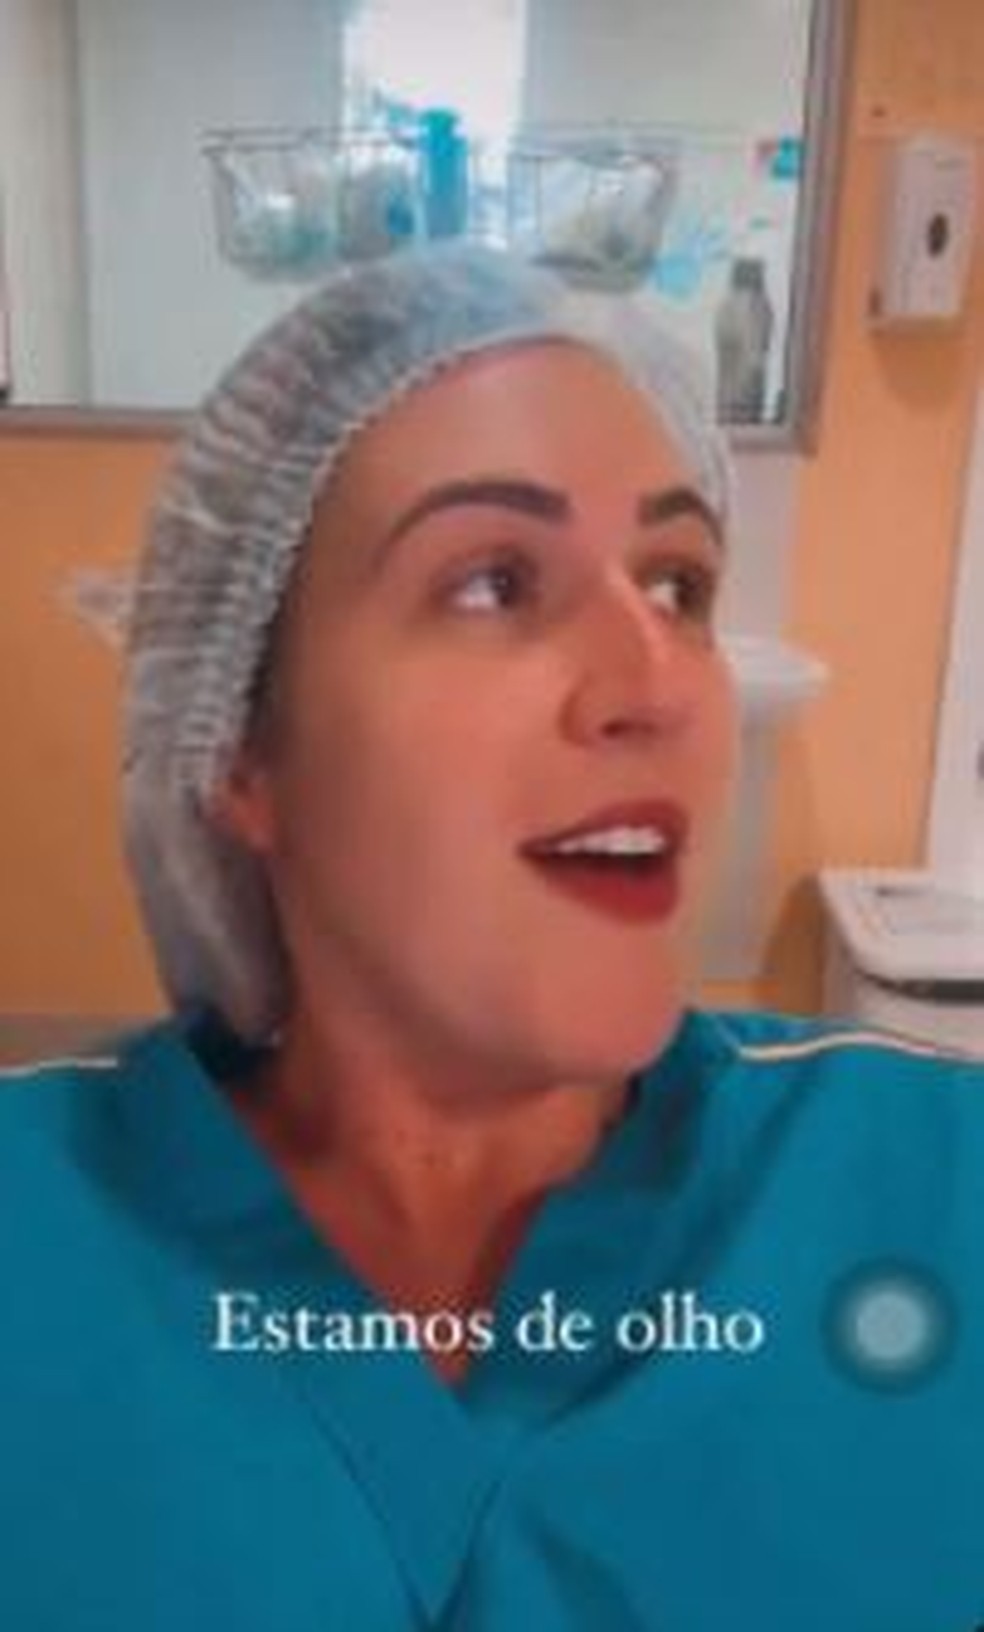 Enfermeira é alvo de investigação de hospital após publicar vídeo em que aparece sem máscara no trabalho — Foto: Reprodução/Instagram